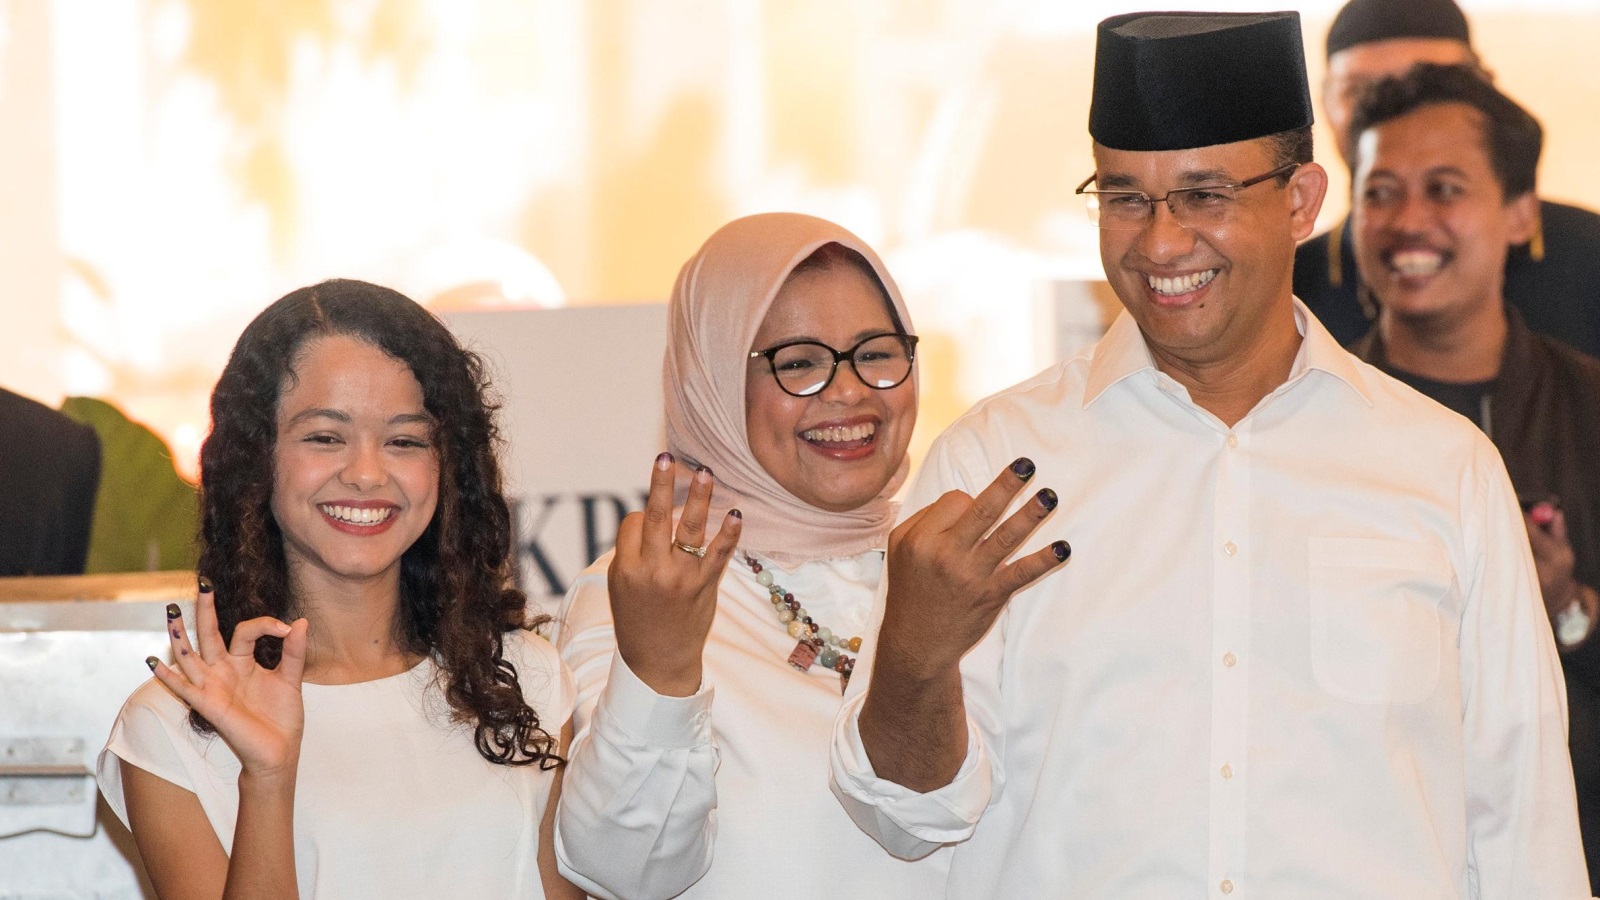 مرشح المعارضة أنيس باسويدان مع زوجته وابنته بعد الإدلاء بأصواتهم بالانتخابات 